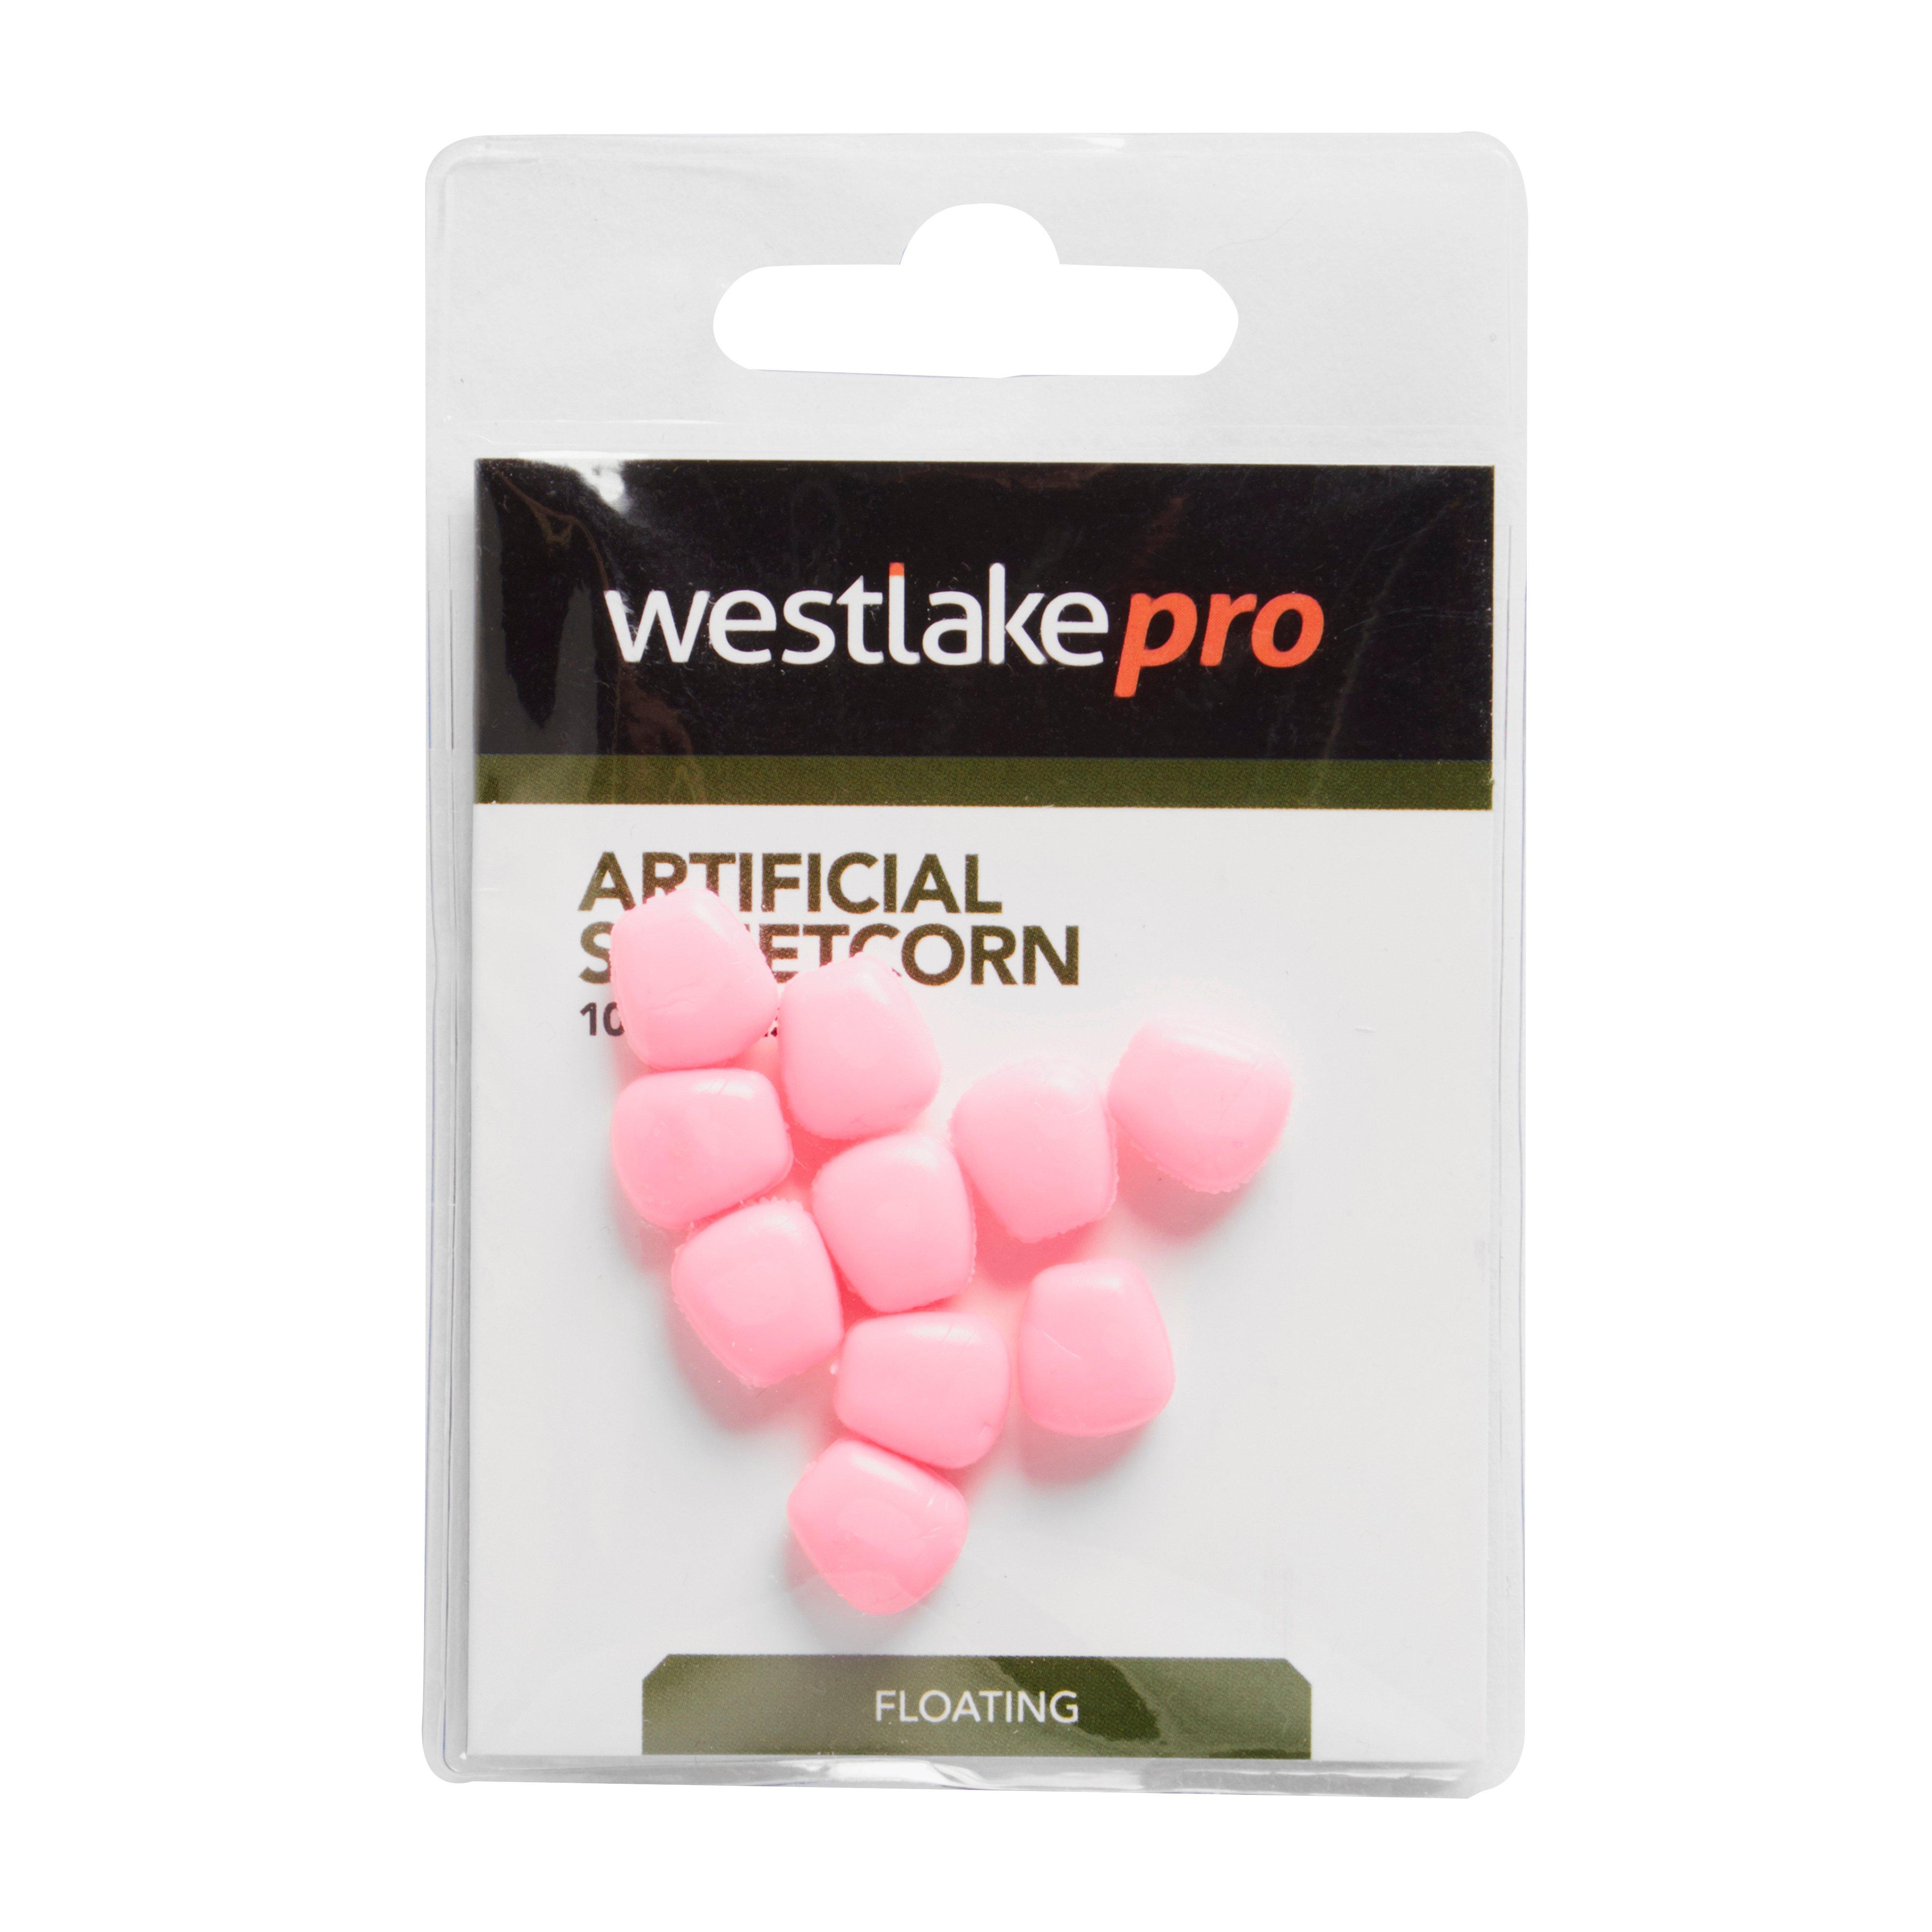 Westlake Sweetcorn Pink Floating 10Pc Review